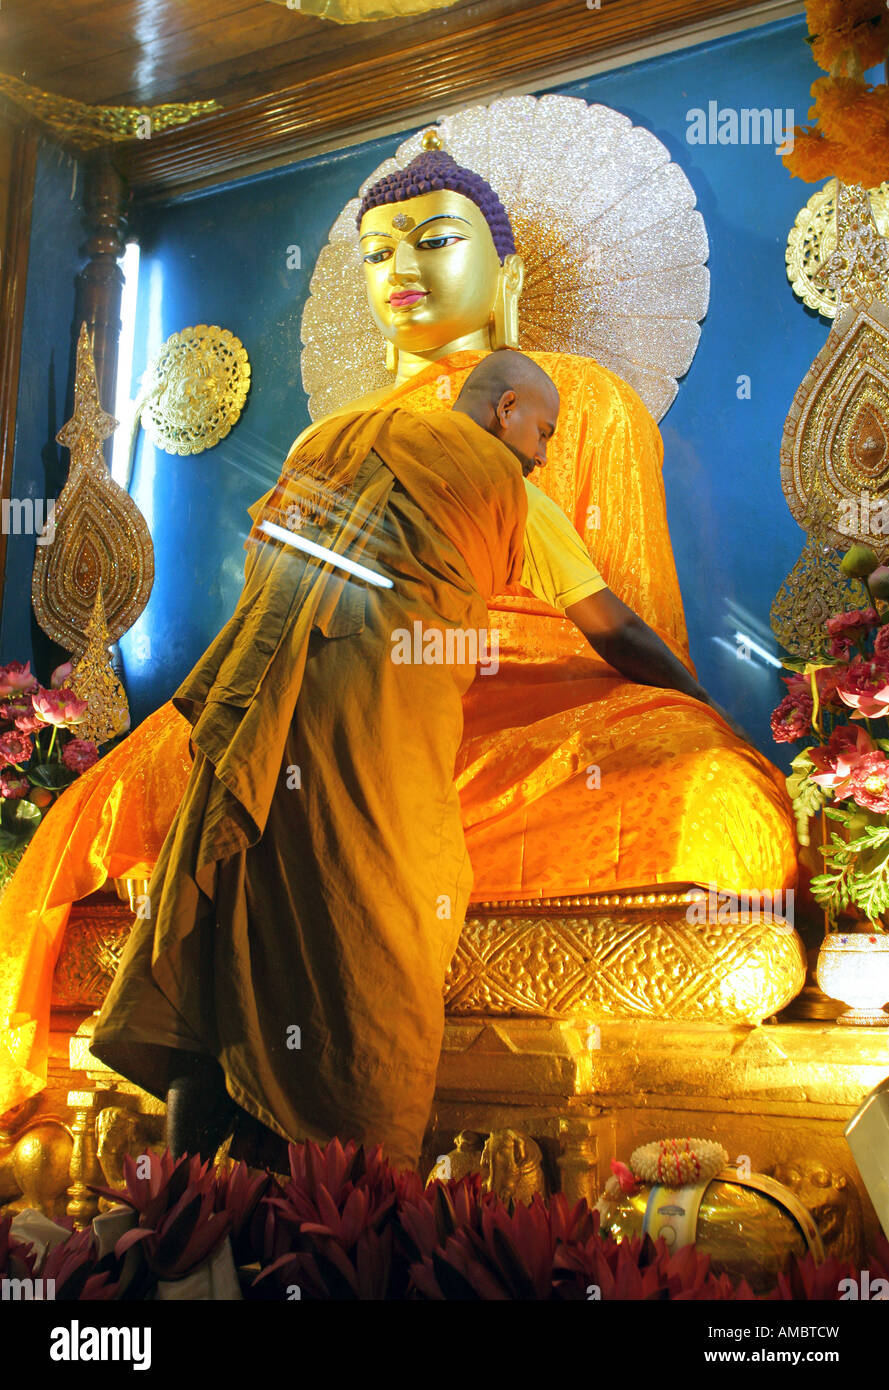 L'Inde, Bodhgaya : moine bouddhiste Bouddha statue vinaigrette dans le temple de la Mahabodhi Banque D'Images